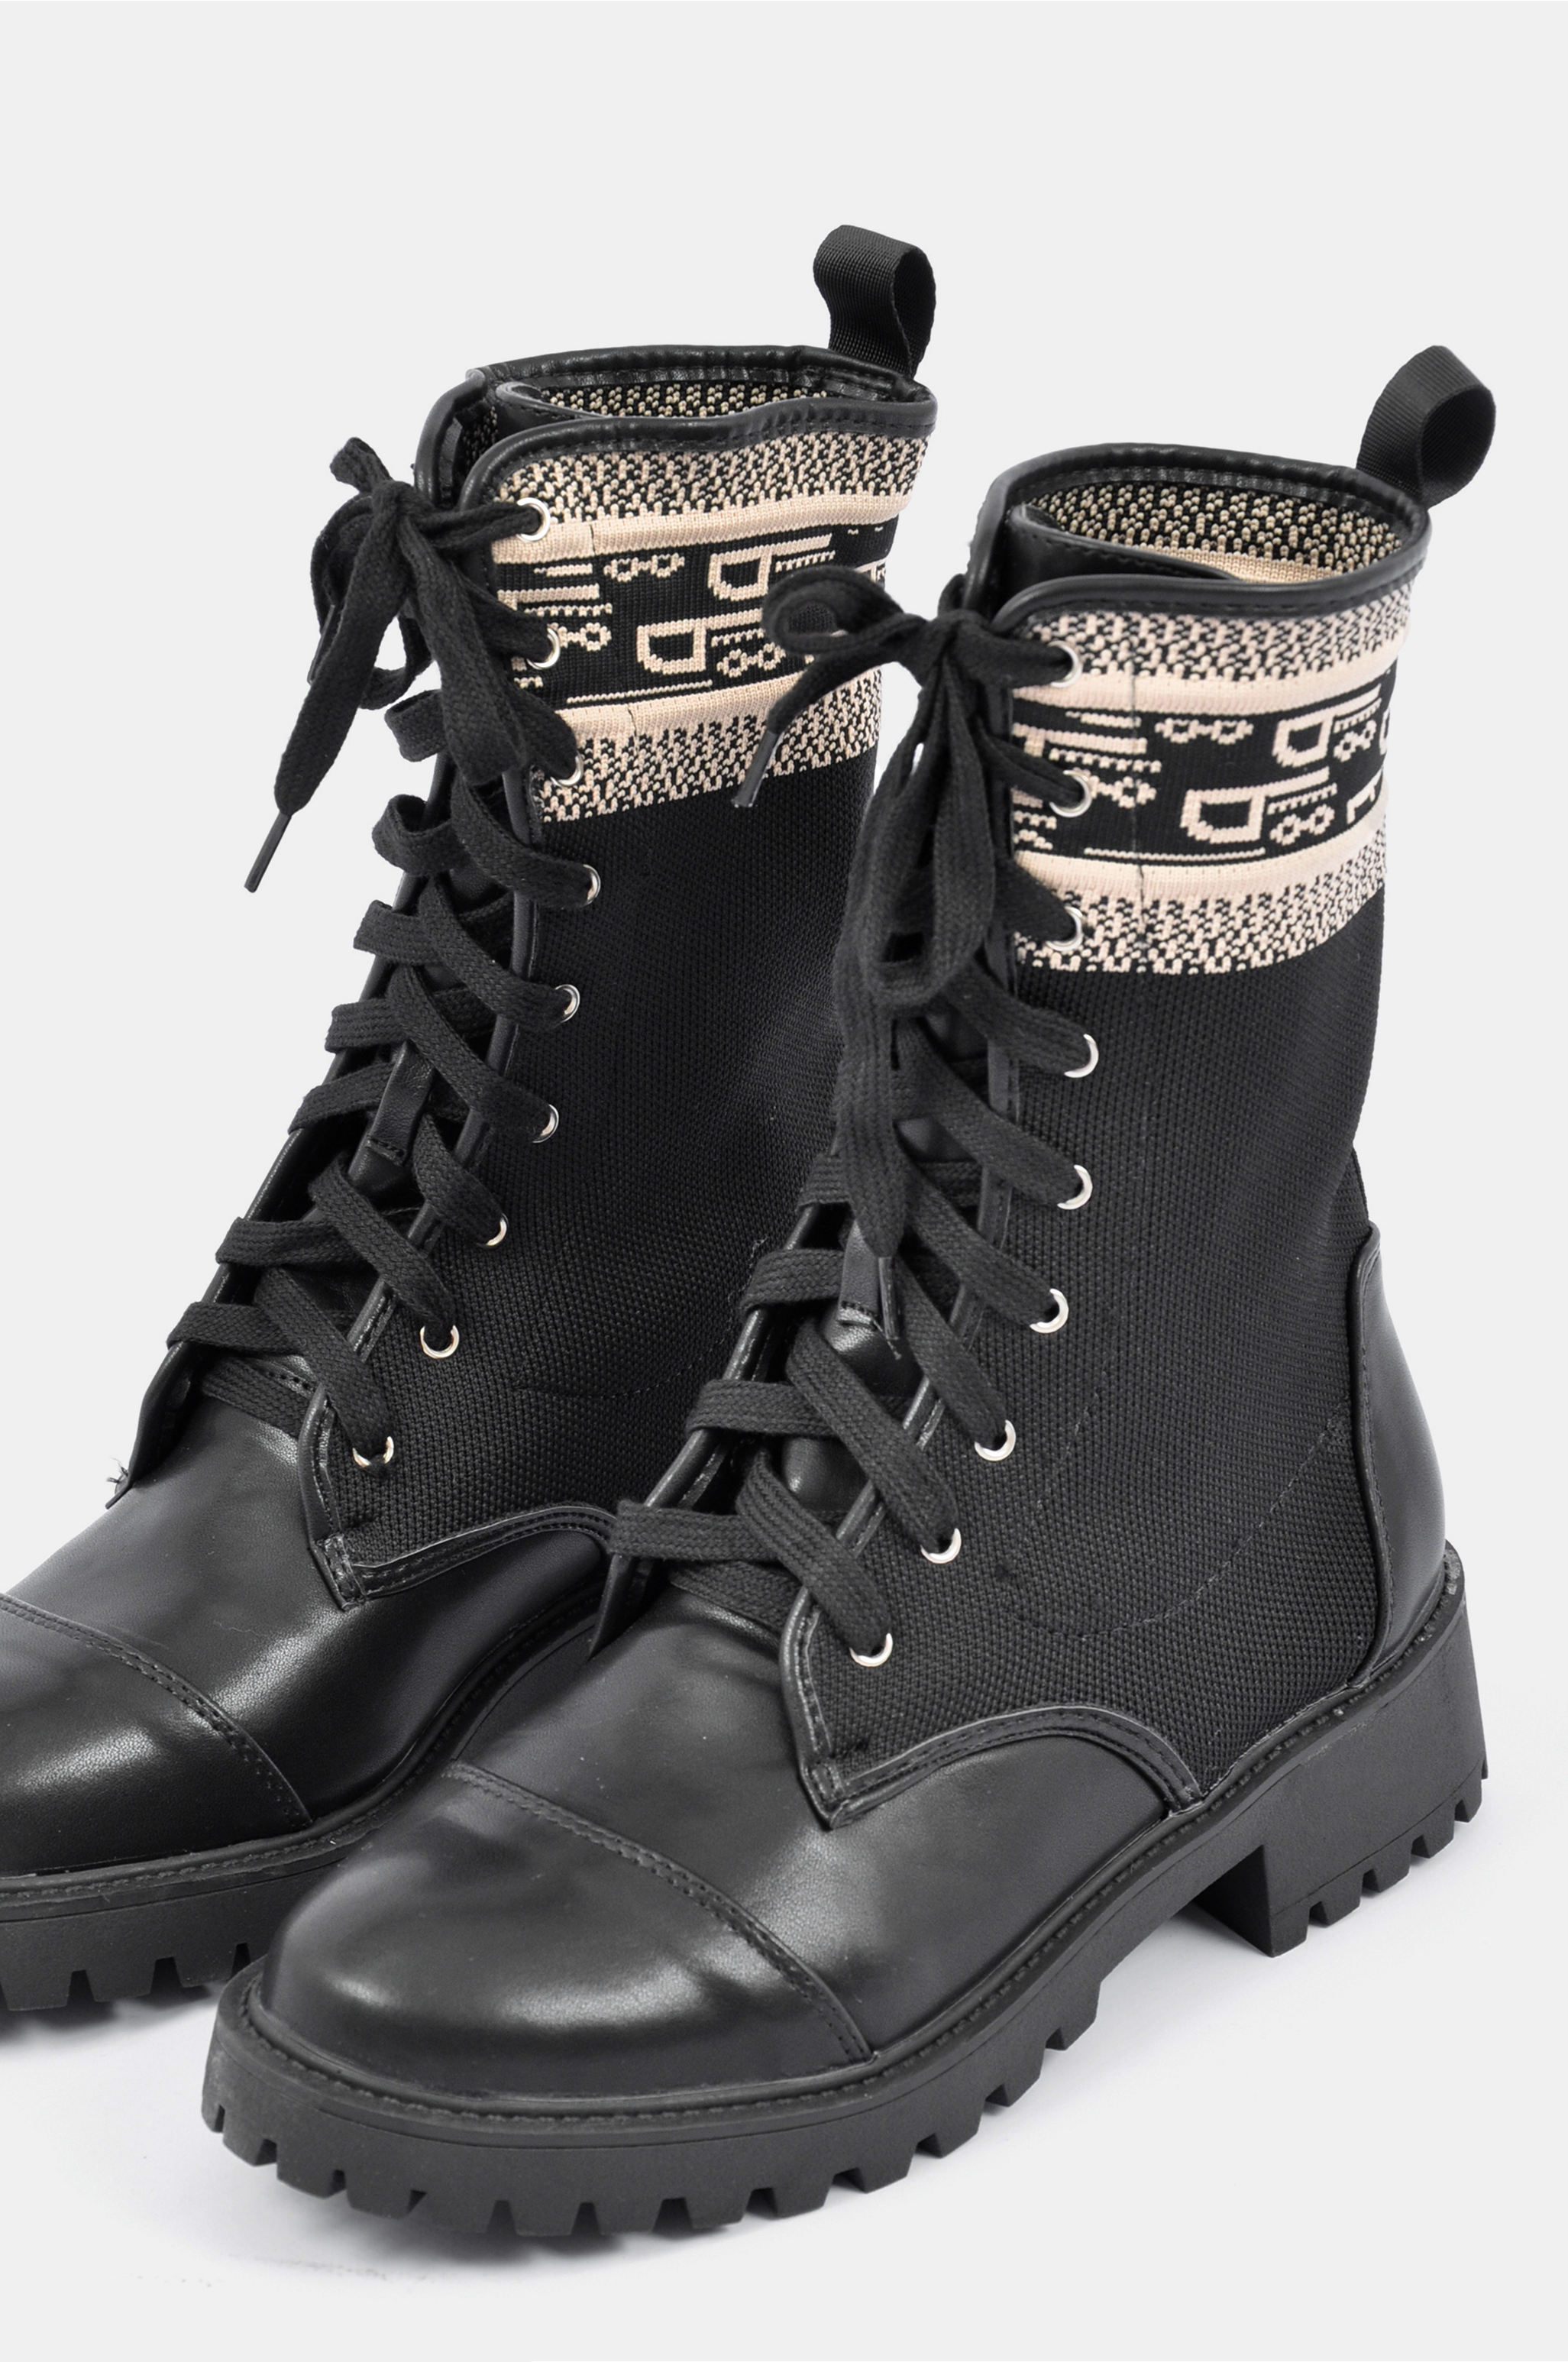 Hila boots black